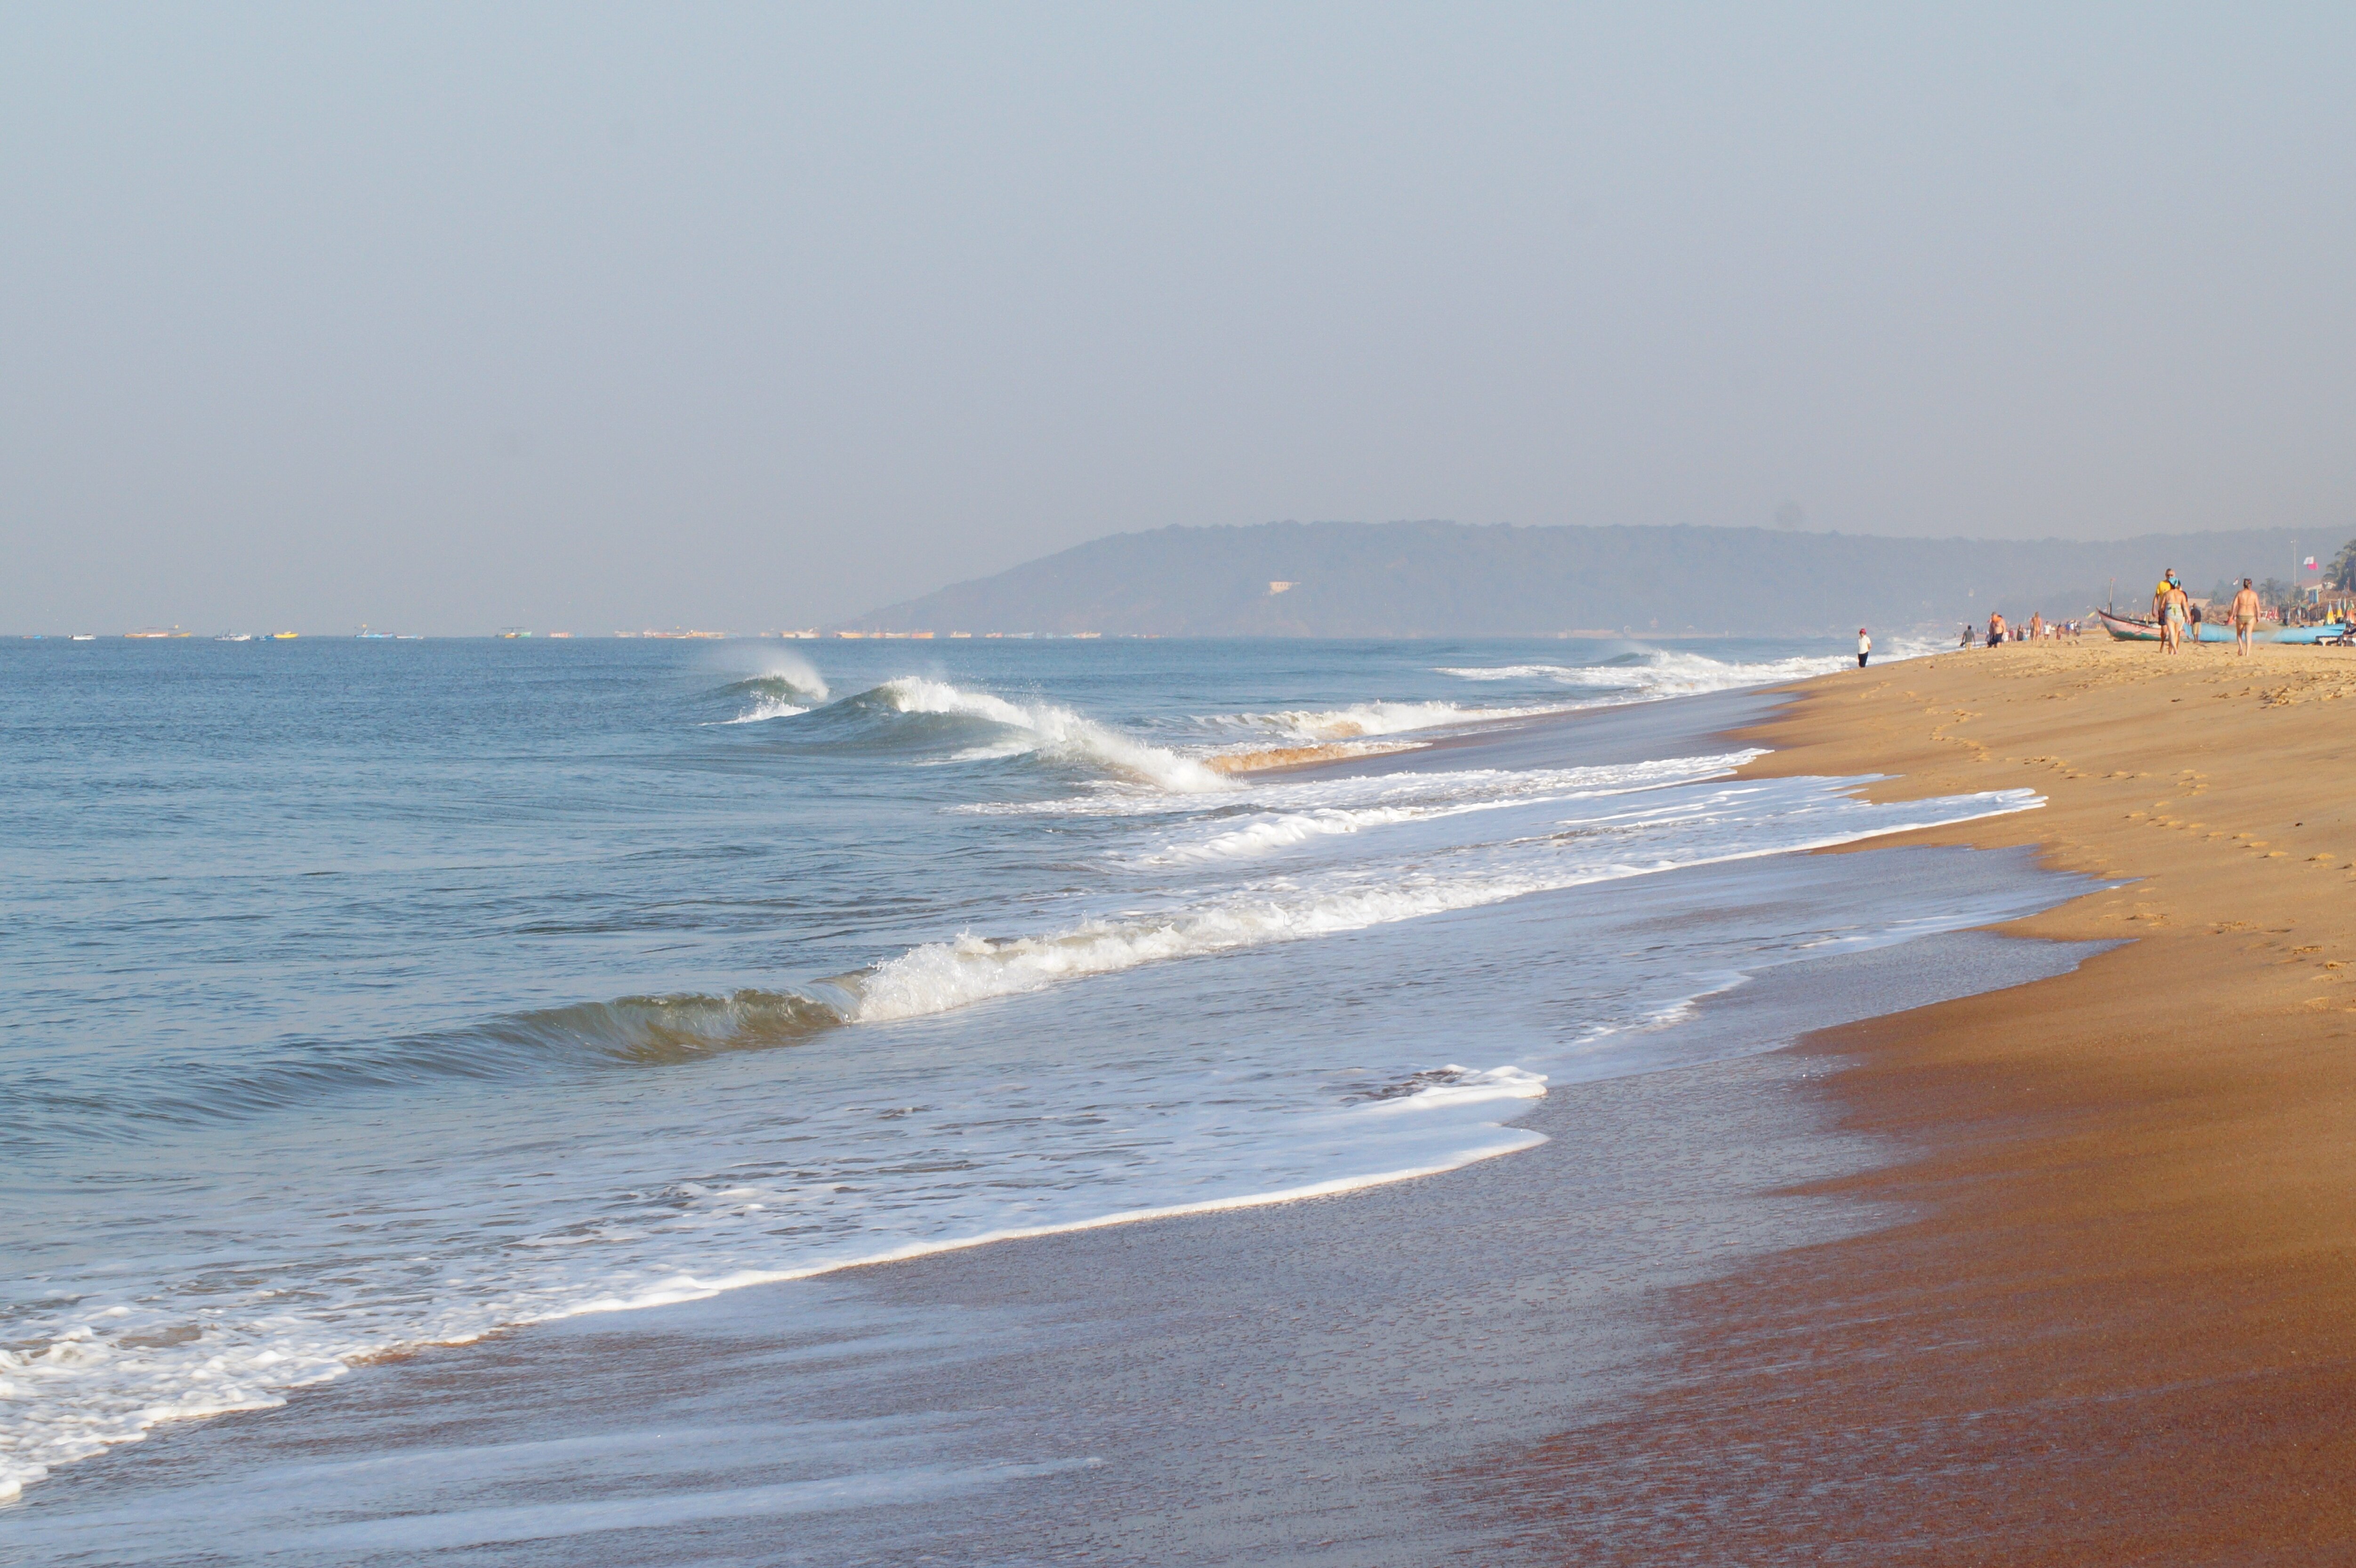 Пляж Кандолим охраняют и сохраняют в
чистоте, но за аренду лежаков придётся заплатить около 200 рупий (185 рублей).